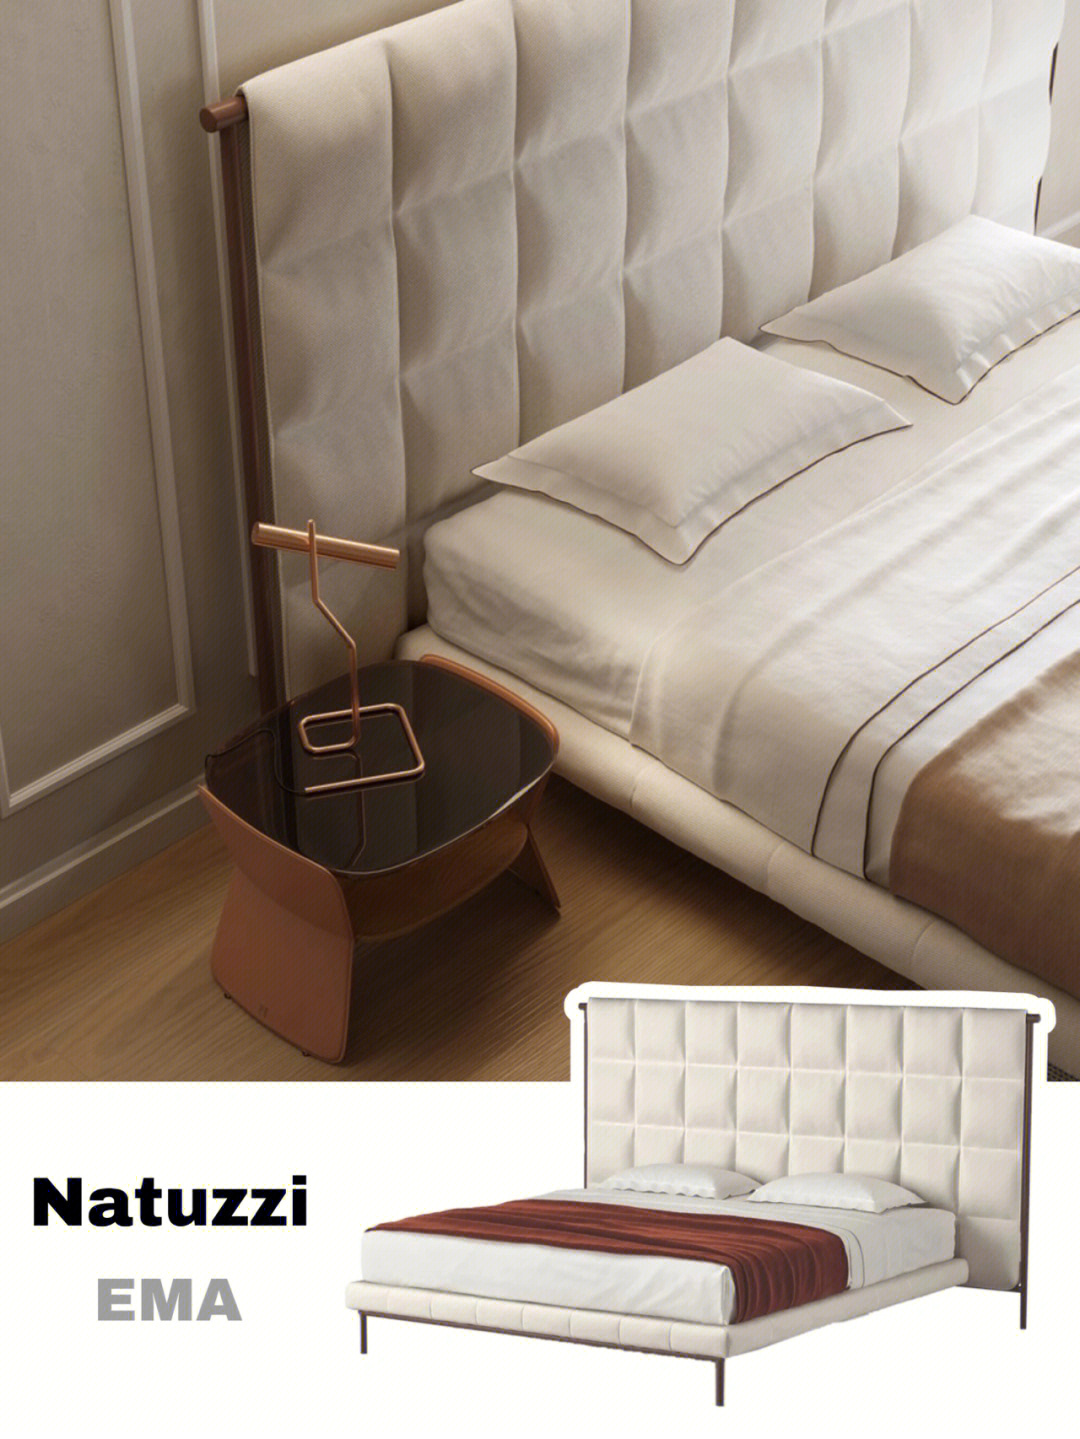 natuzzi最受欢迎靠背大床低调奢华05高颜值